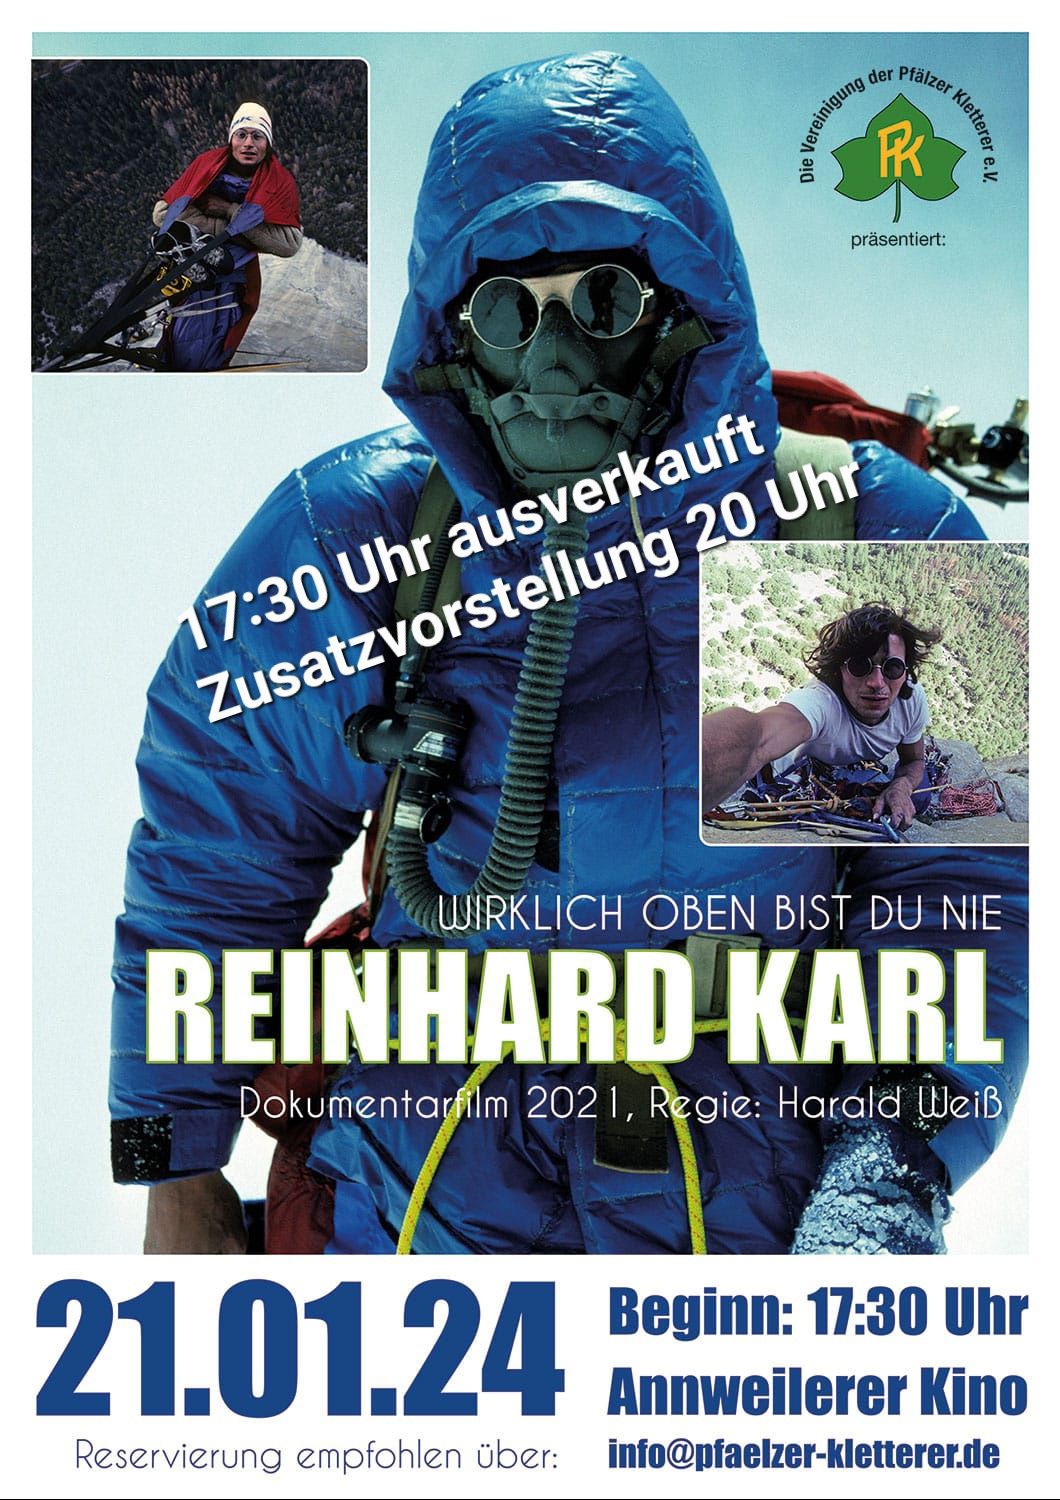 Reinhard Karl Film in Annweiler - 21.01.2024 | die PK